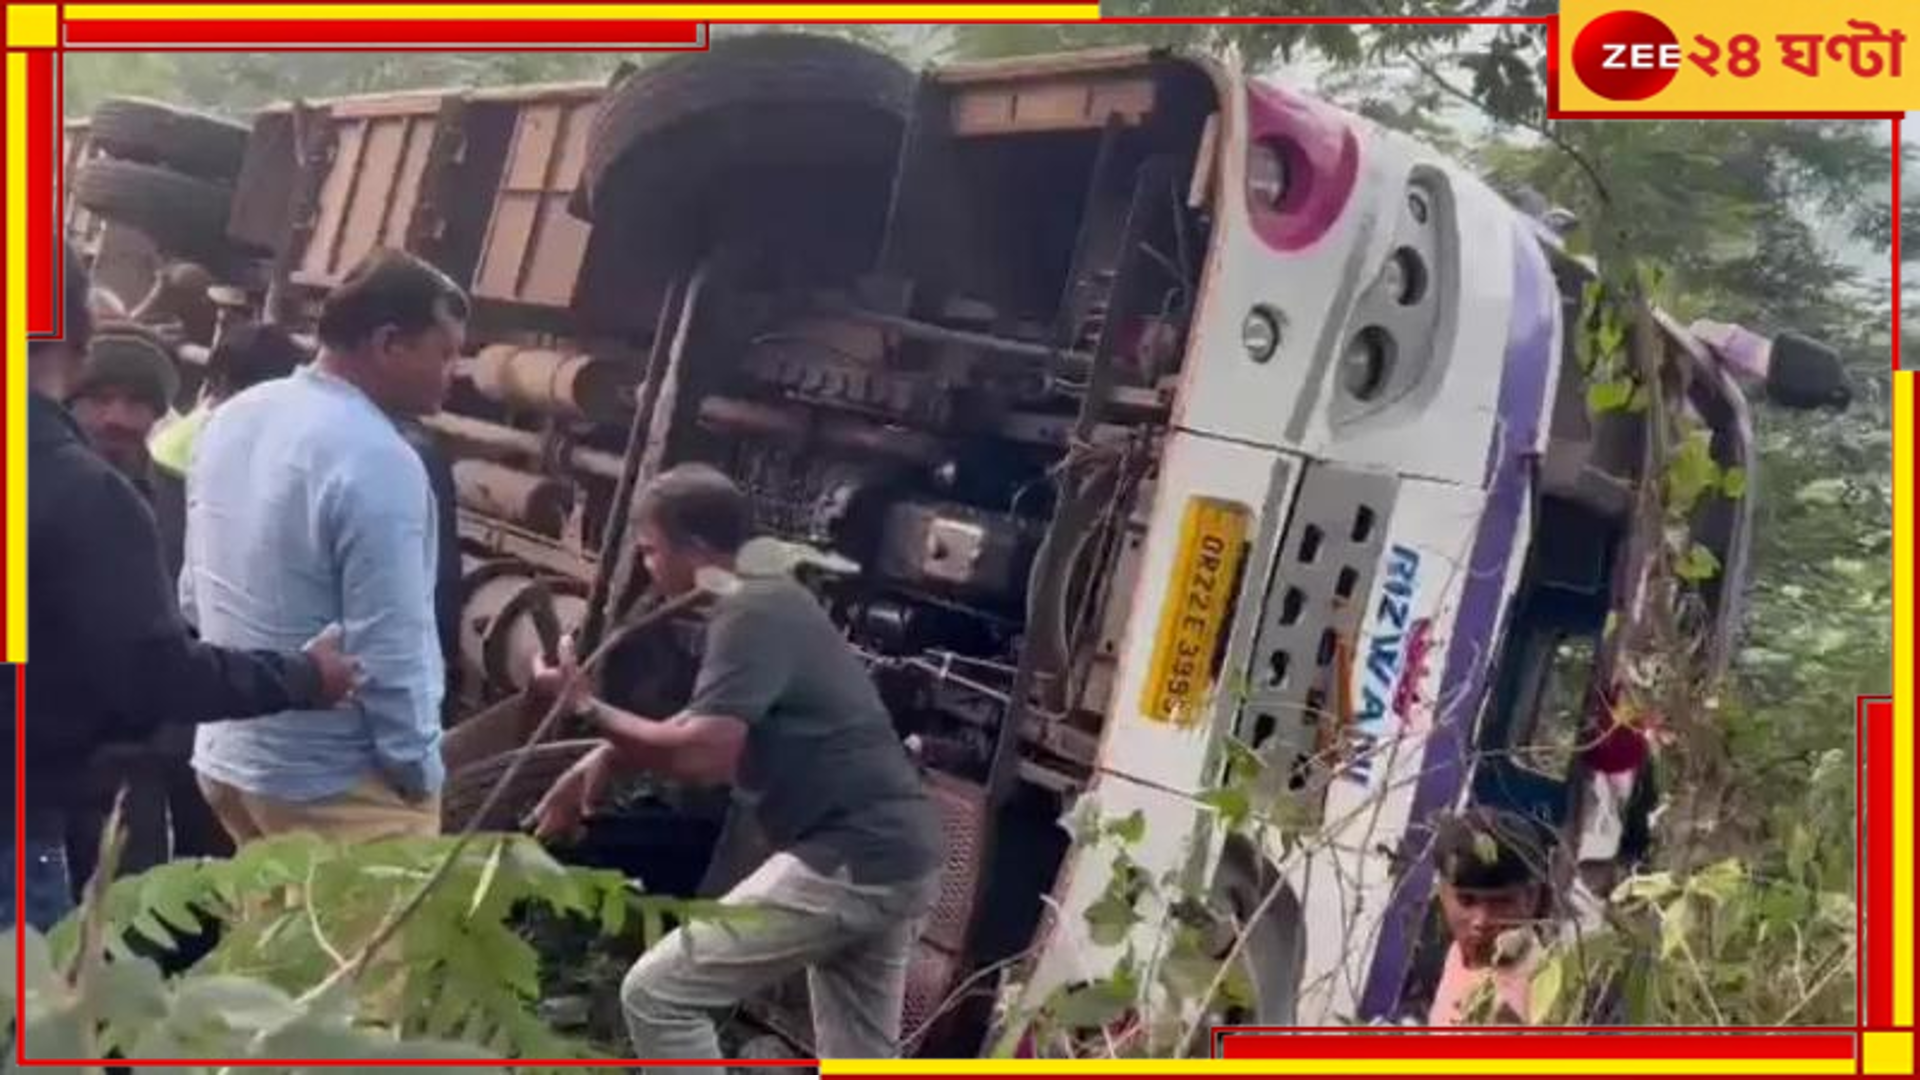 Odisha Bus Accident: সেতু থেকে পড়ল কলকাতাগামী যাত্রীবাহী বাস, ভয়ংকর দুর্ঘটনায় জখম ৪৪